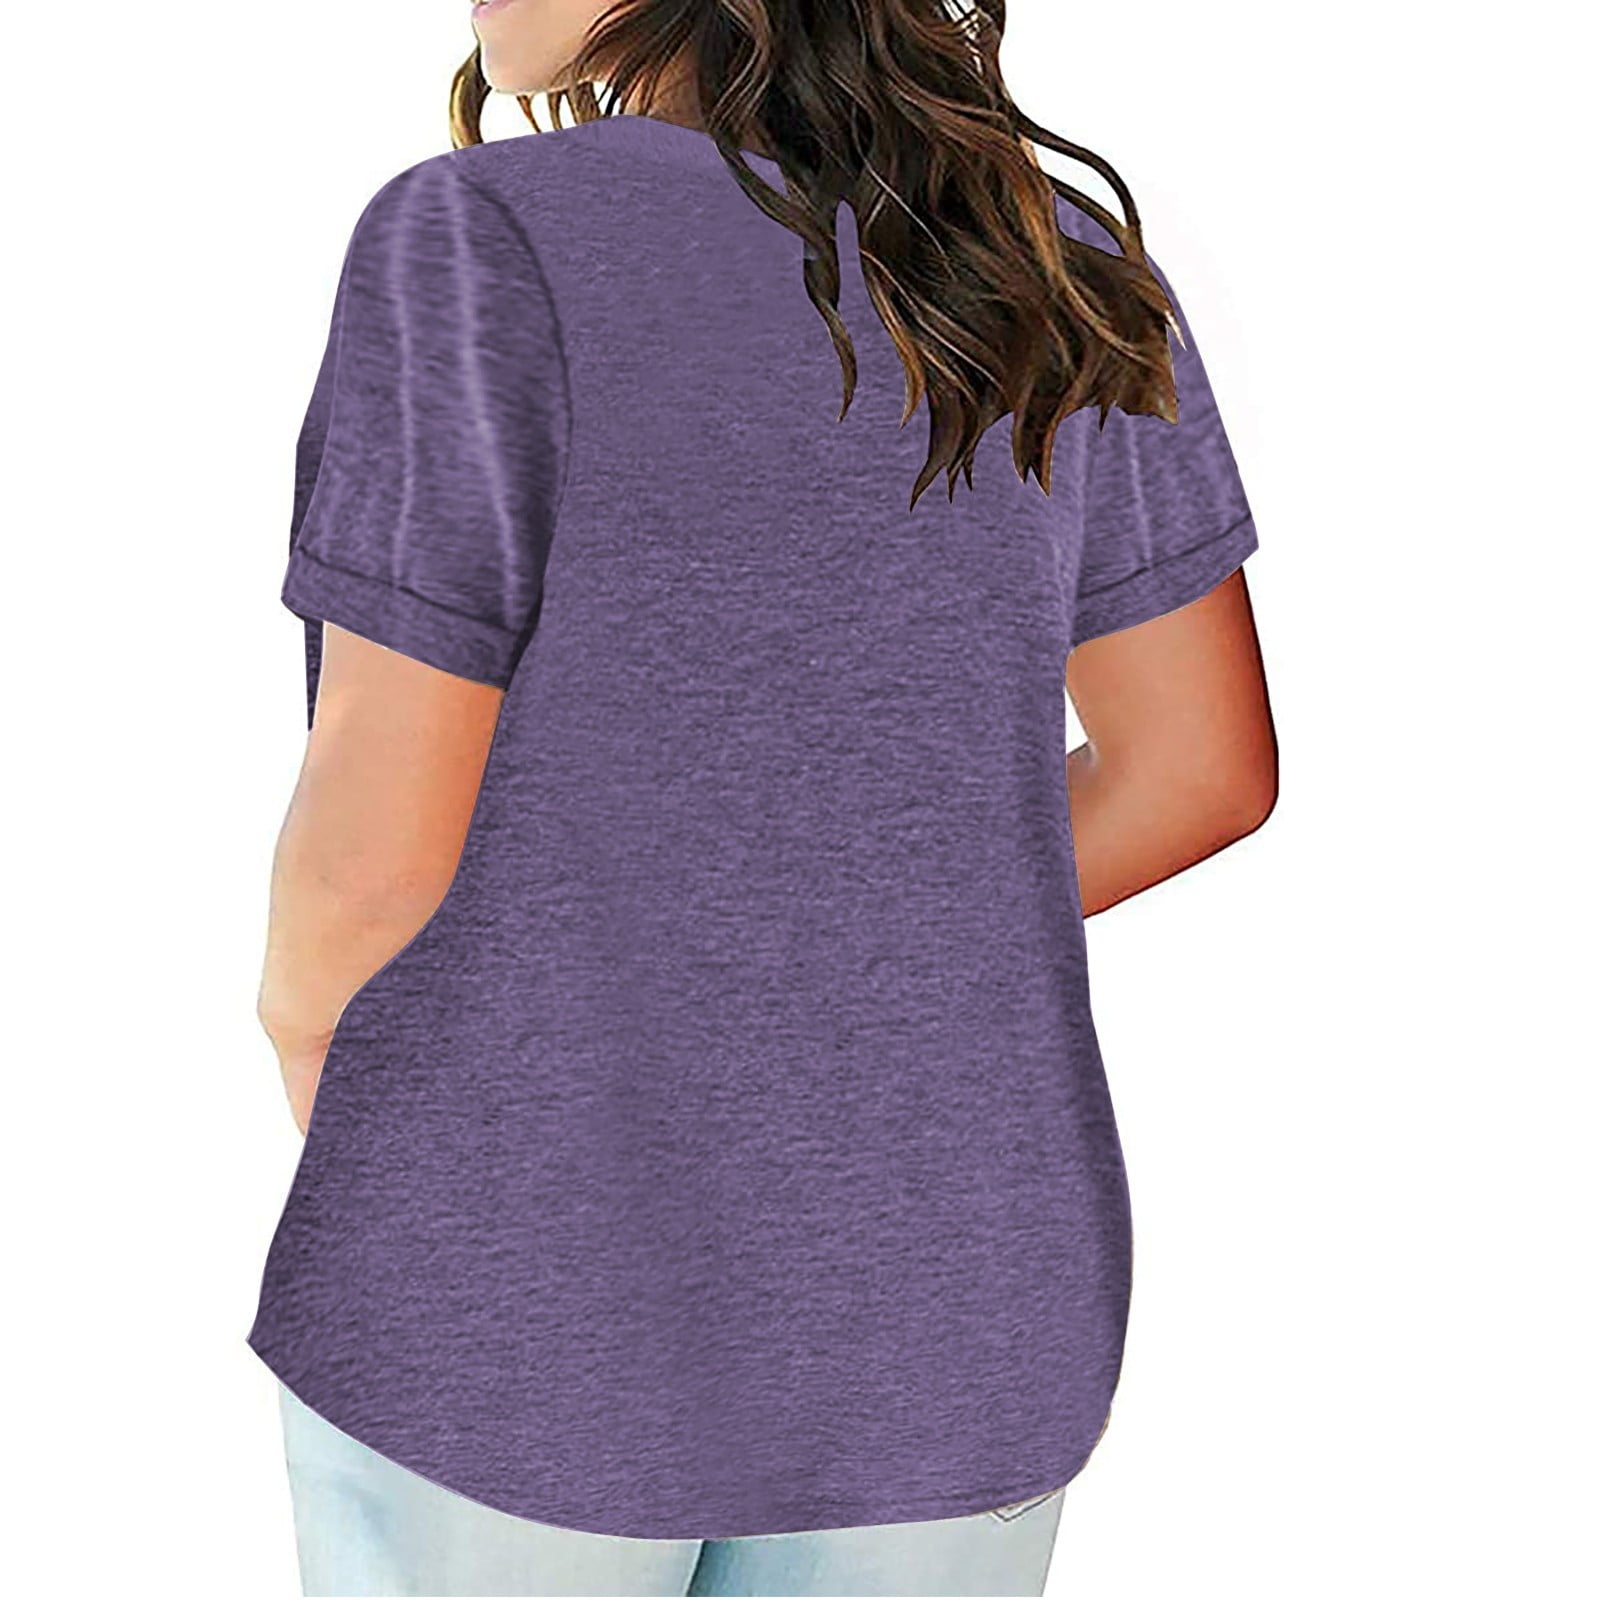 EHTMSAK Womens Basic Tops Summer Tshirts Longer Length Round Neck Short ...